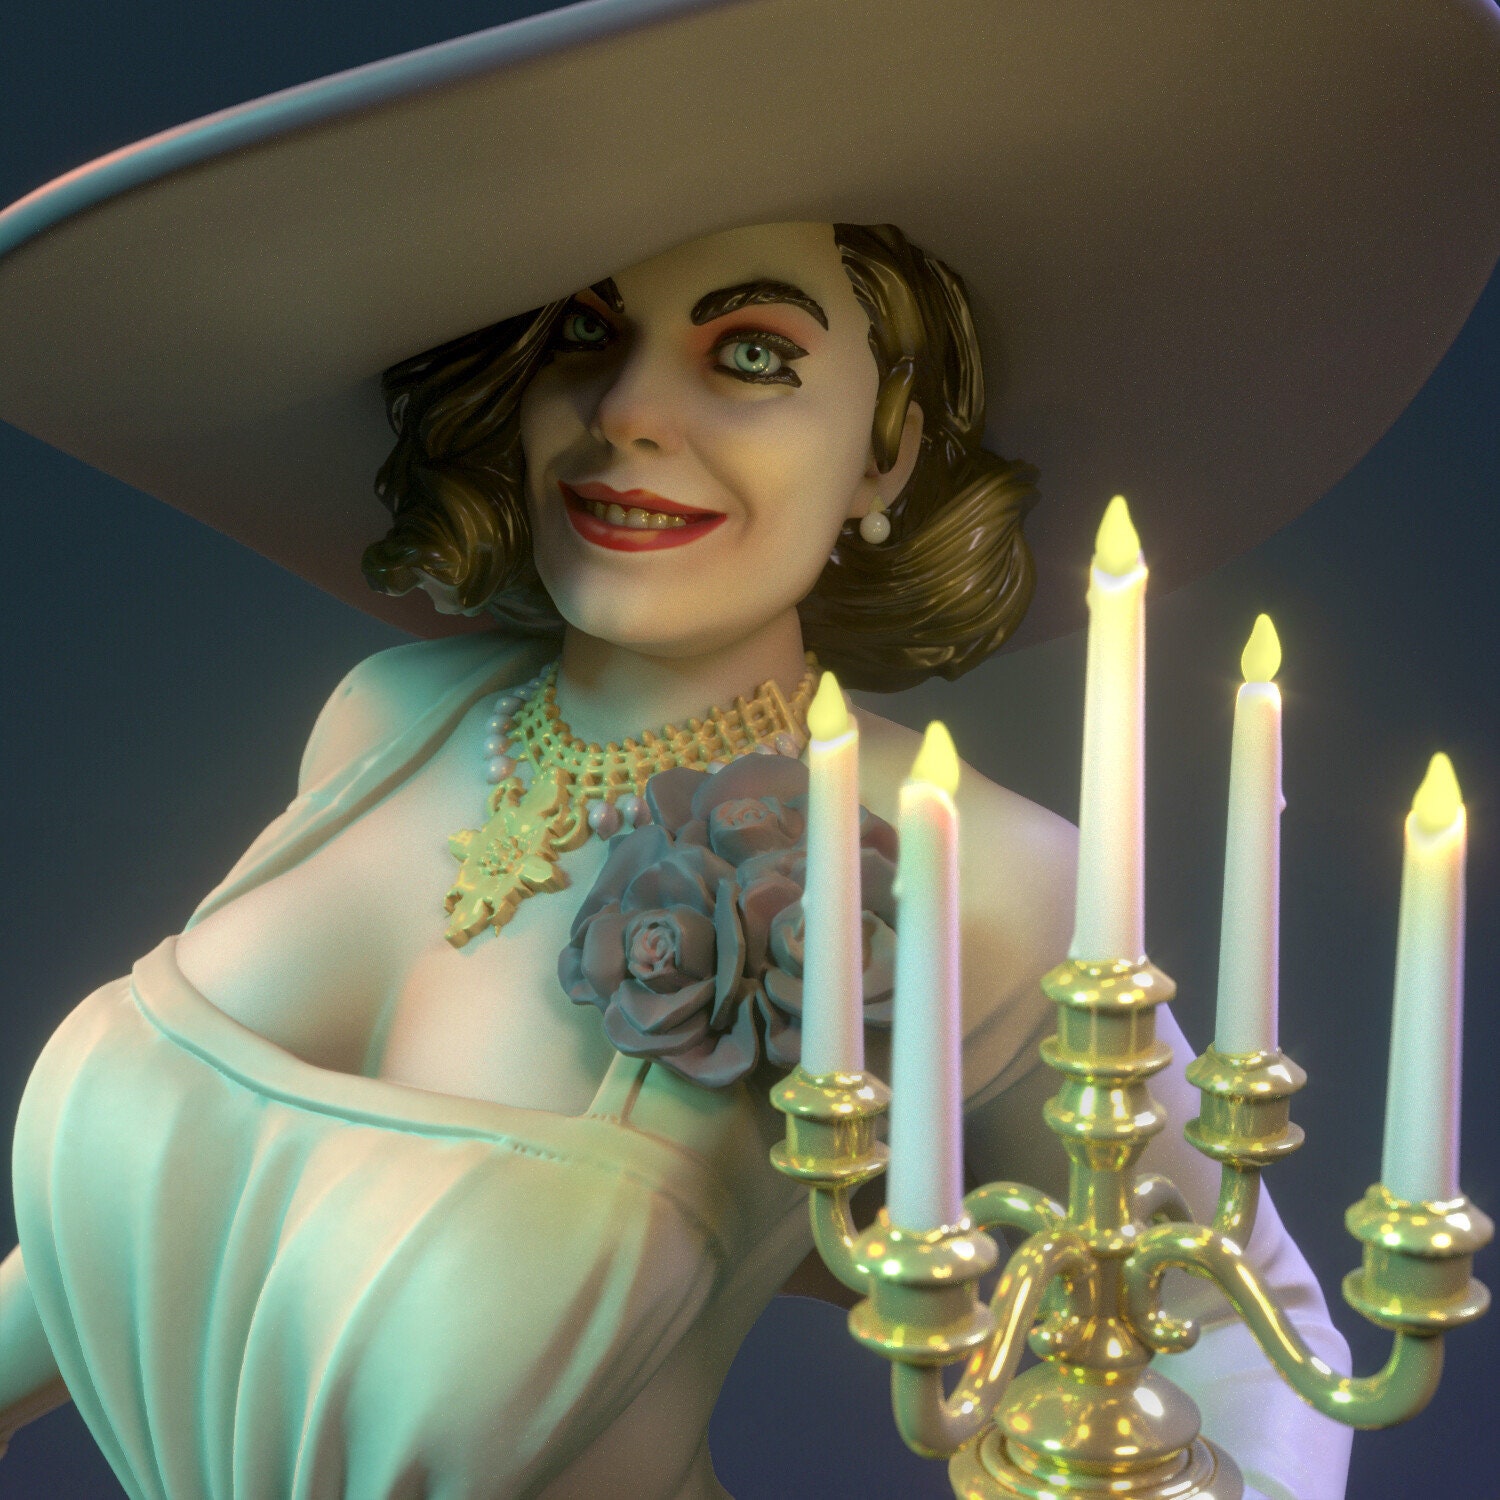 boneco lady dimitrescu resident evil 3D action figure terror jogo